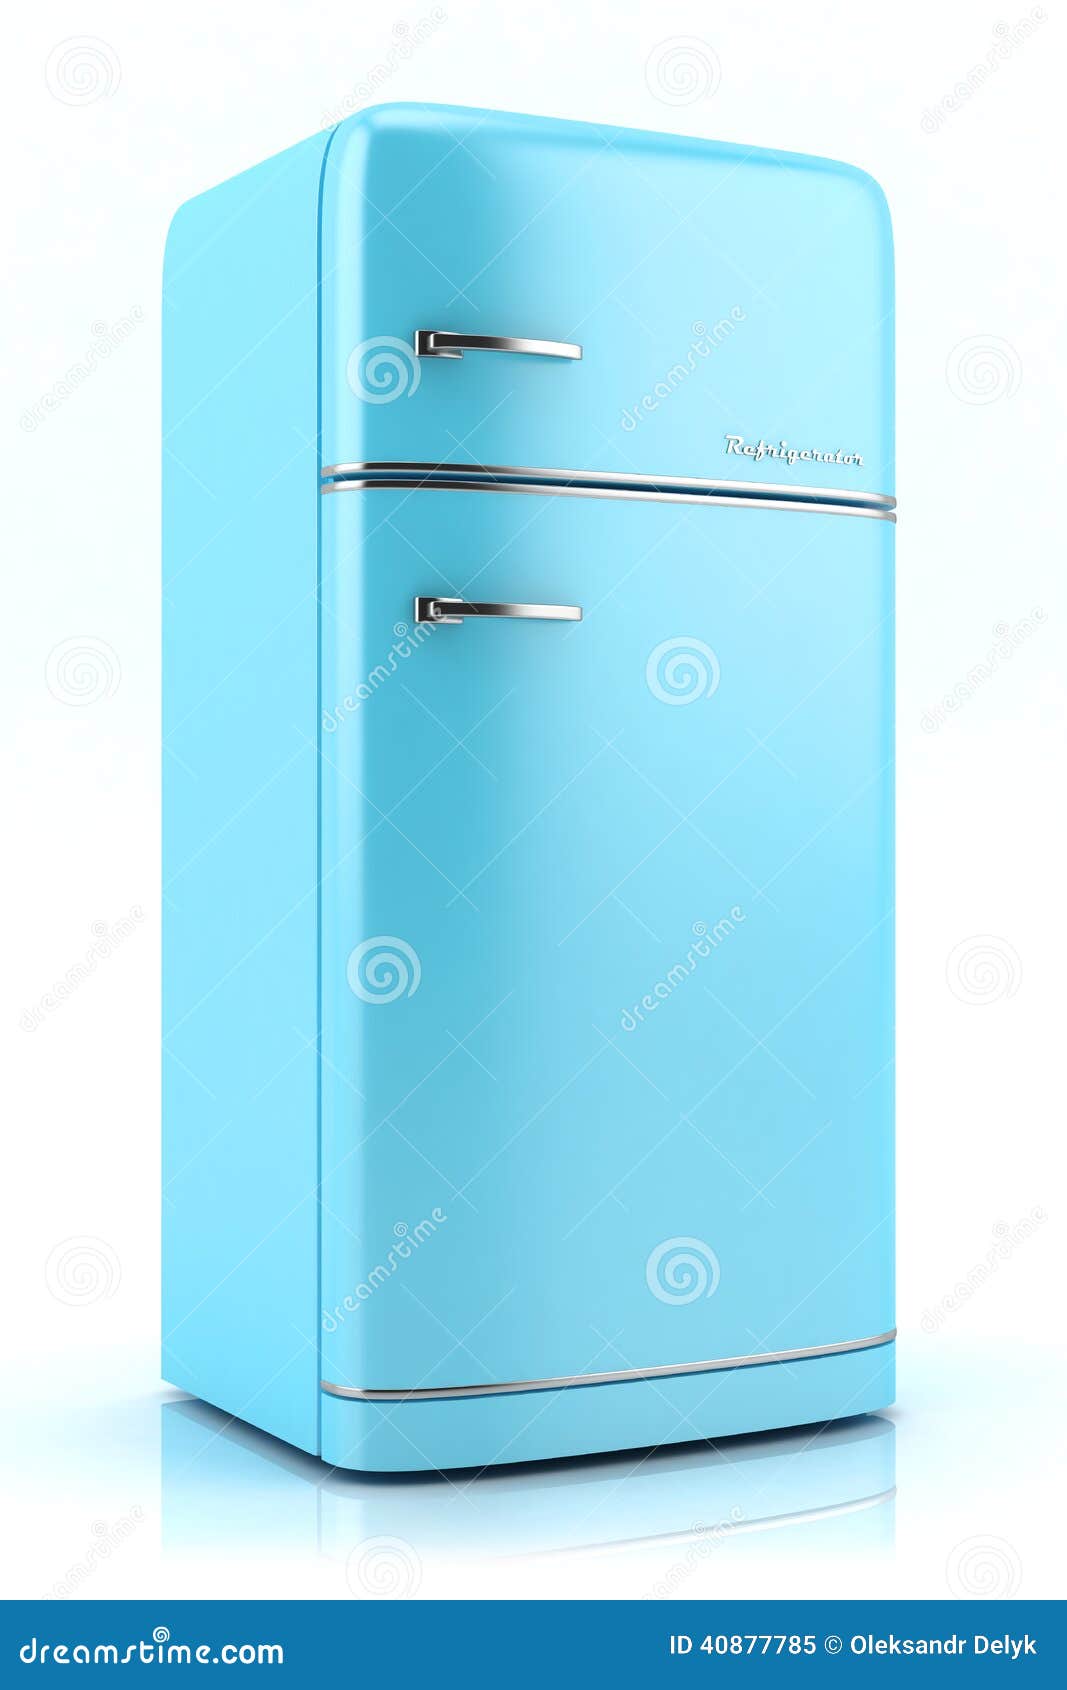 Nuages Pierre Retro réfrigérateur avec congélateur Bleu clair Bleu ciel Vintage Bleu